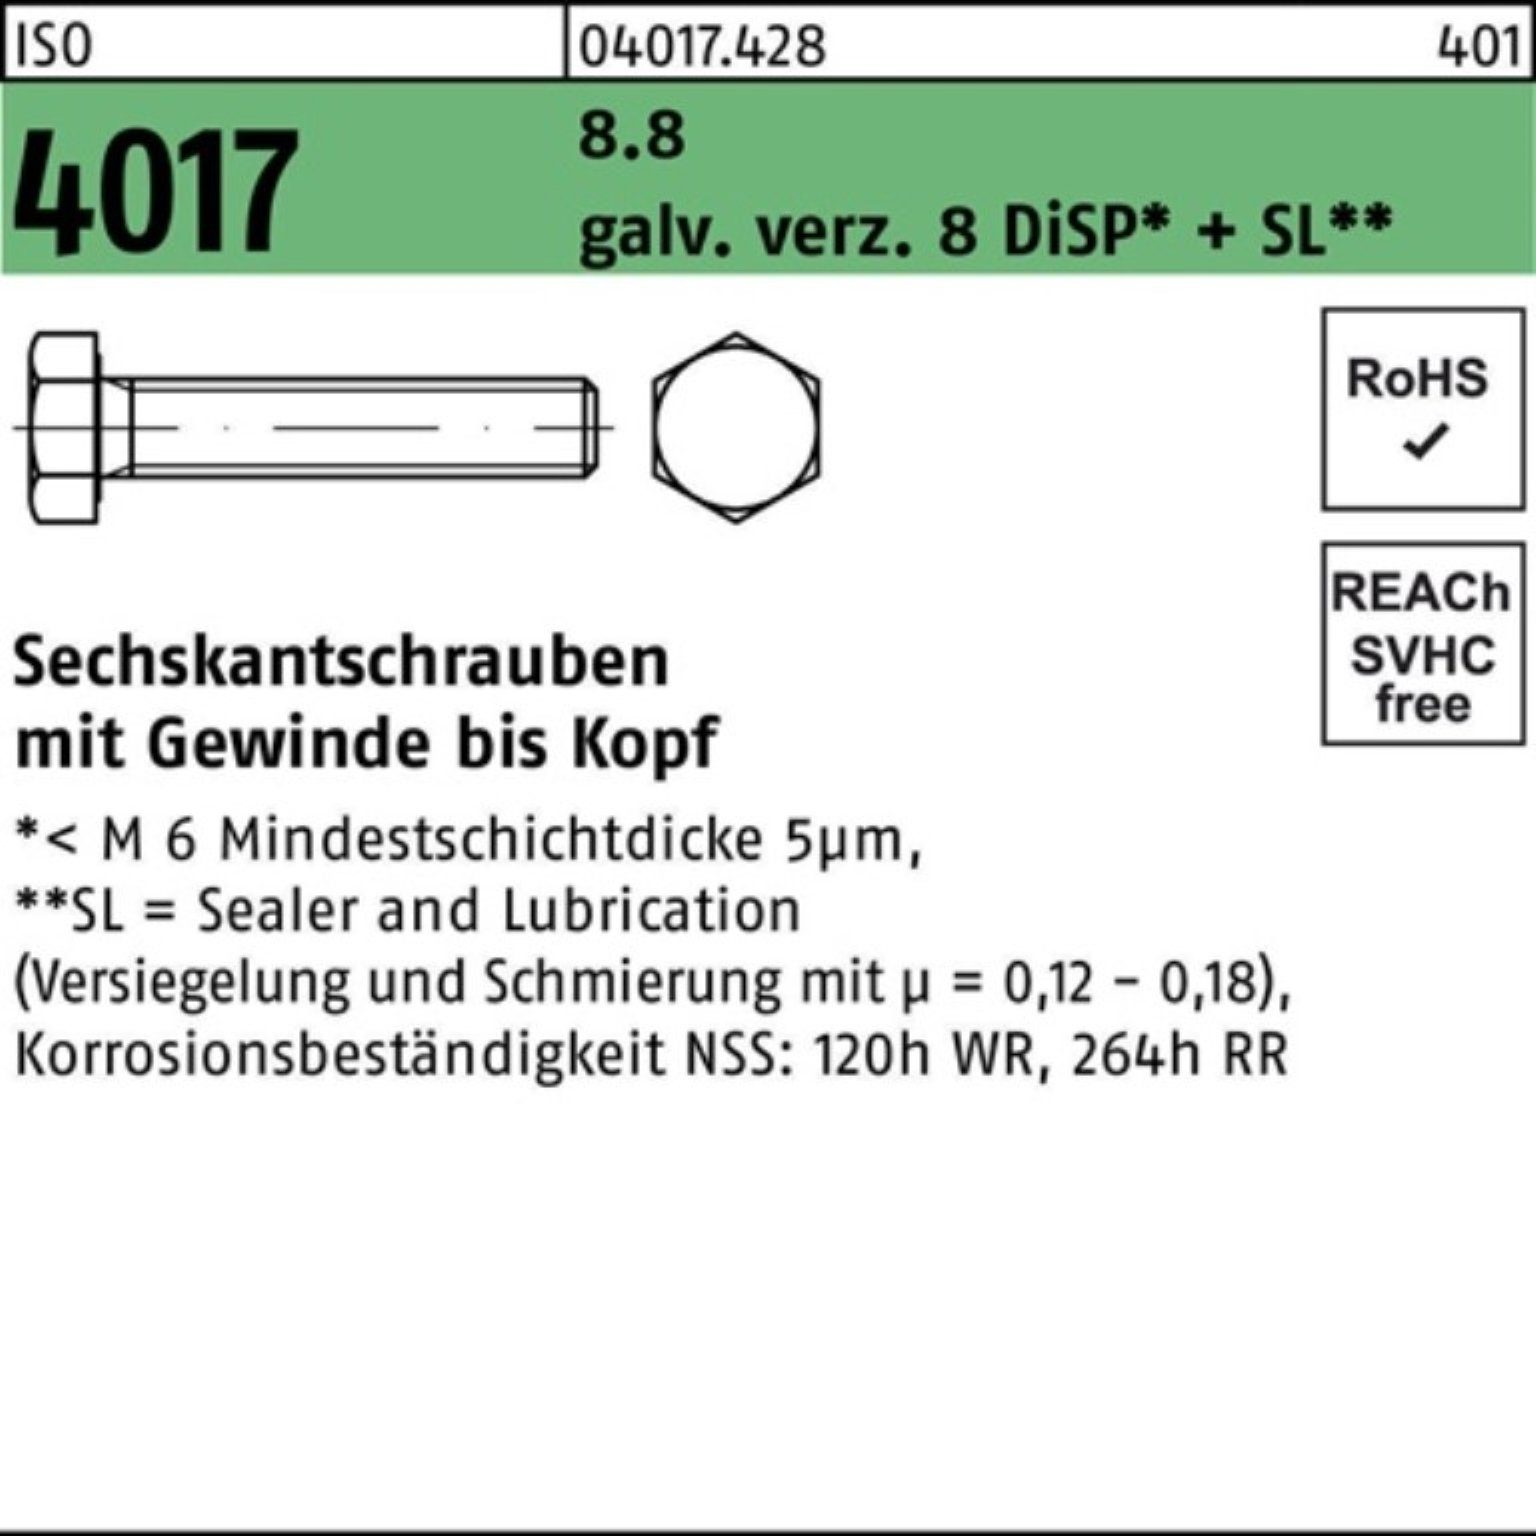 Bufab Sechskantschraube 4017 100er VG ISO Sechskantschraube 8.8 90 DiSP+ 8 Pack M8x galv.verz